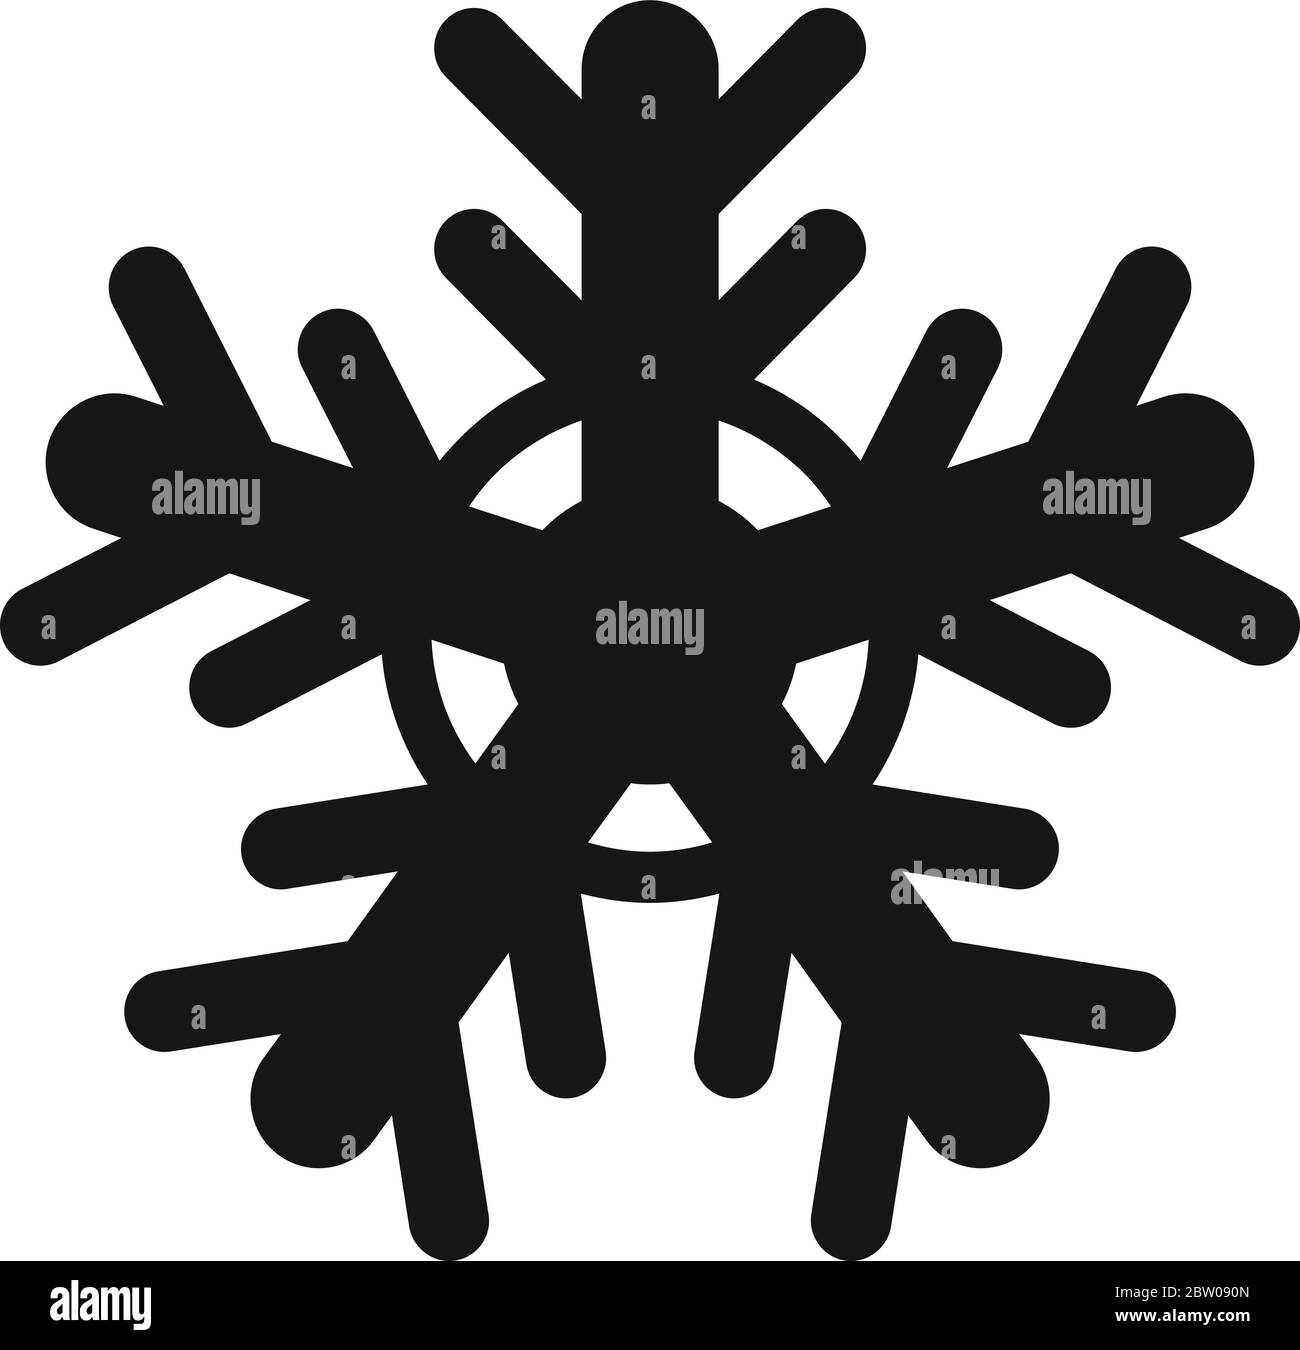 Copo nieve Imágenes vectoriales de stock - Alamy